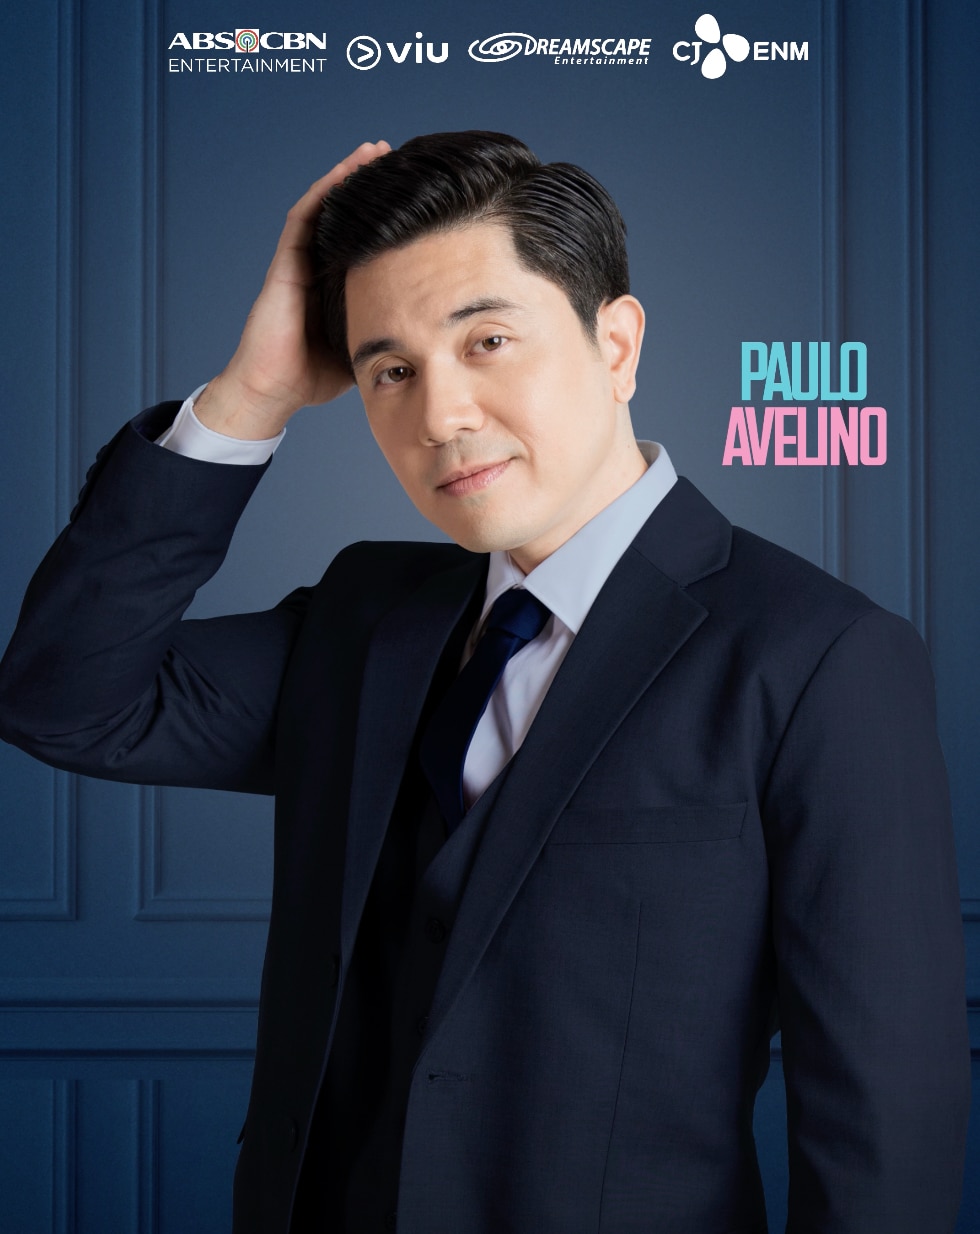 Paulo Avelino